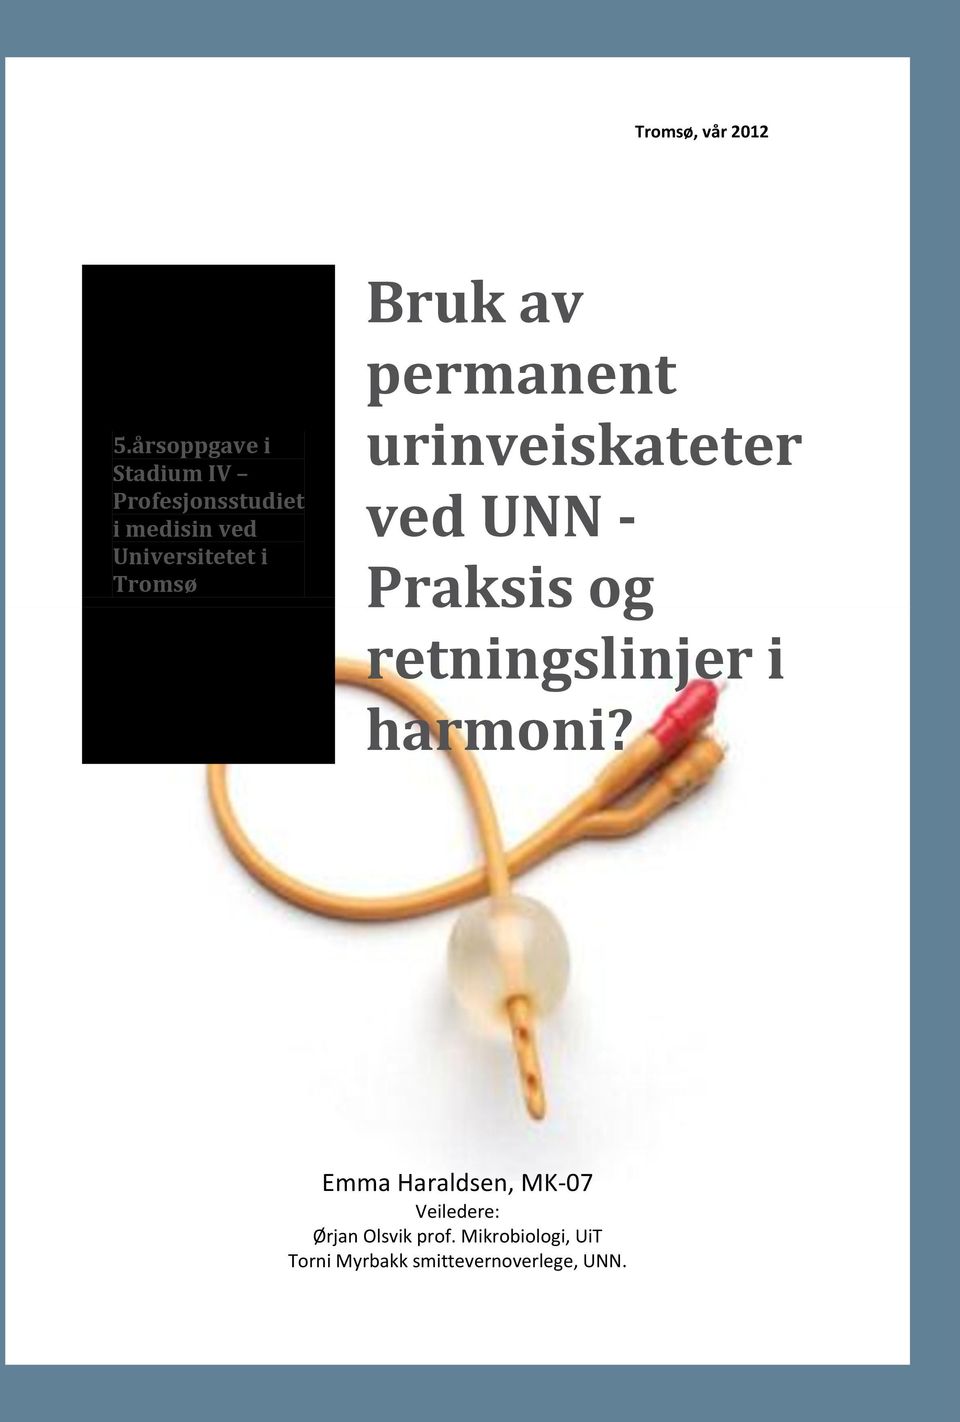 Tromsø Bruk av permanent urinveiskateter ved UNN - Praksis og